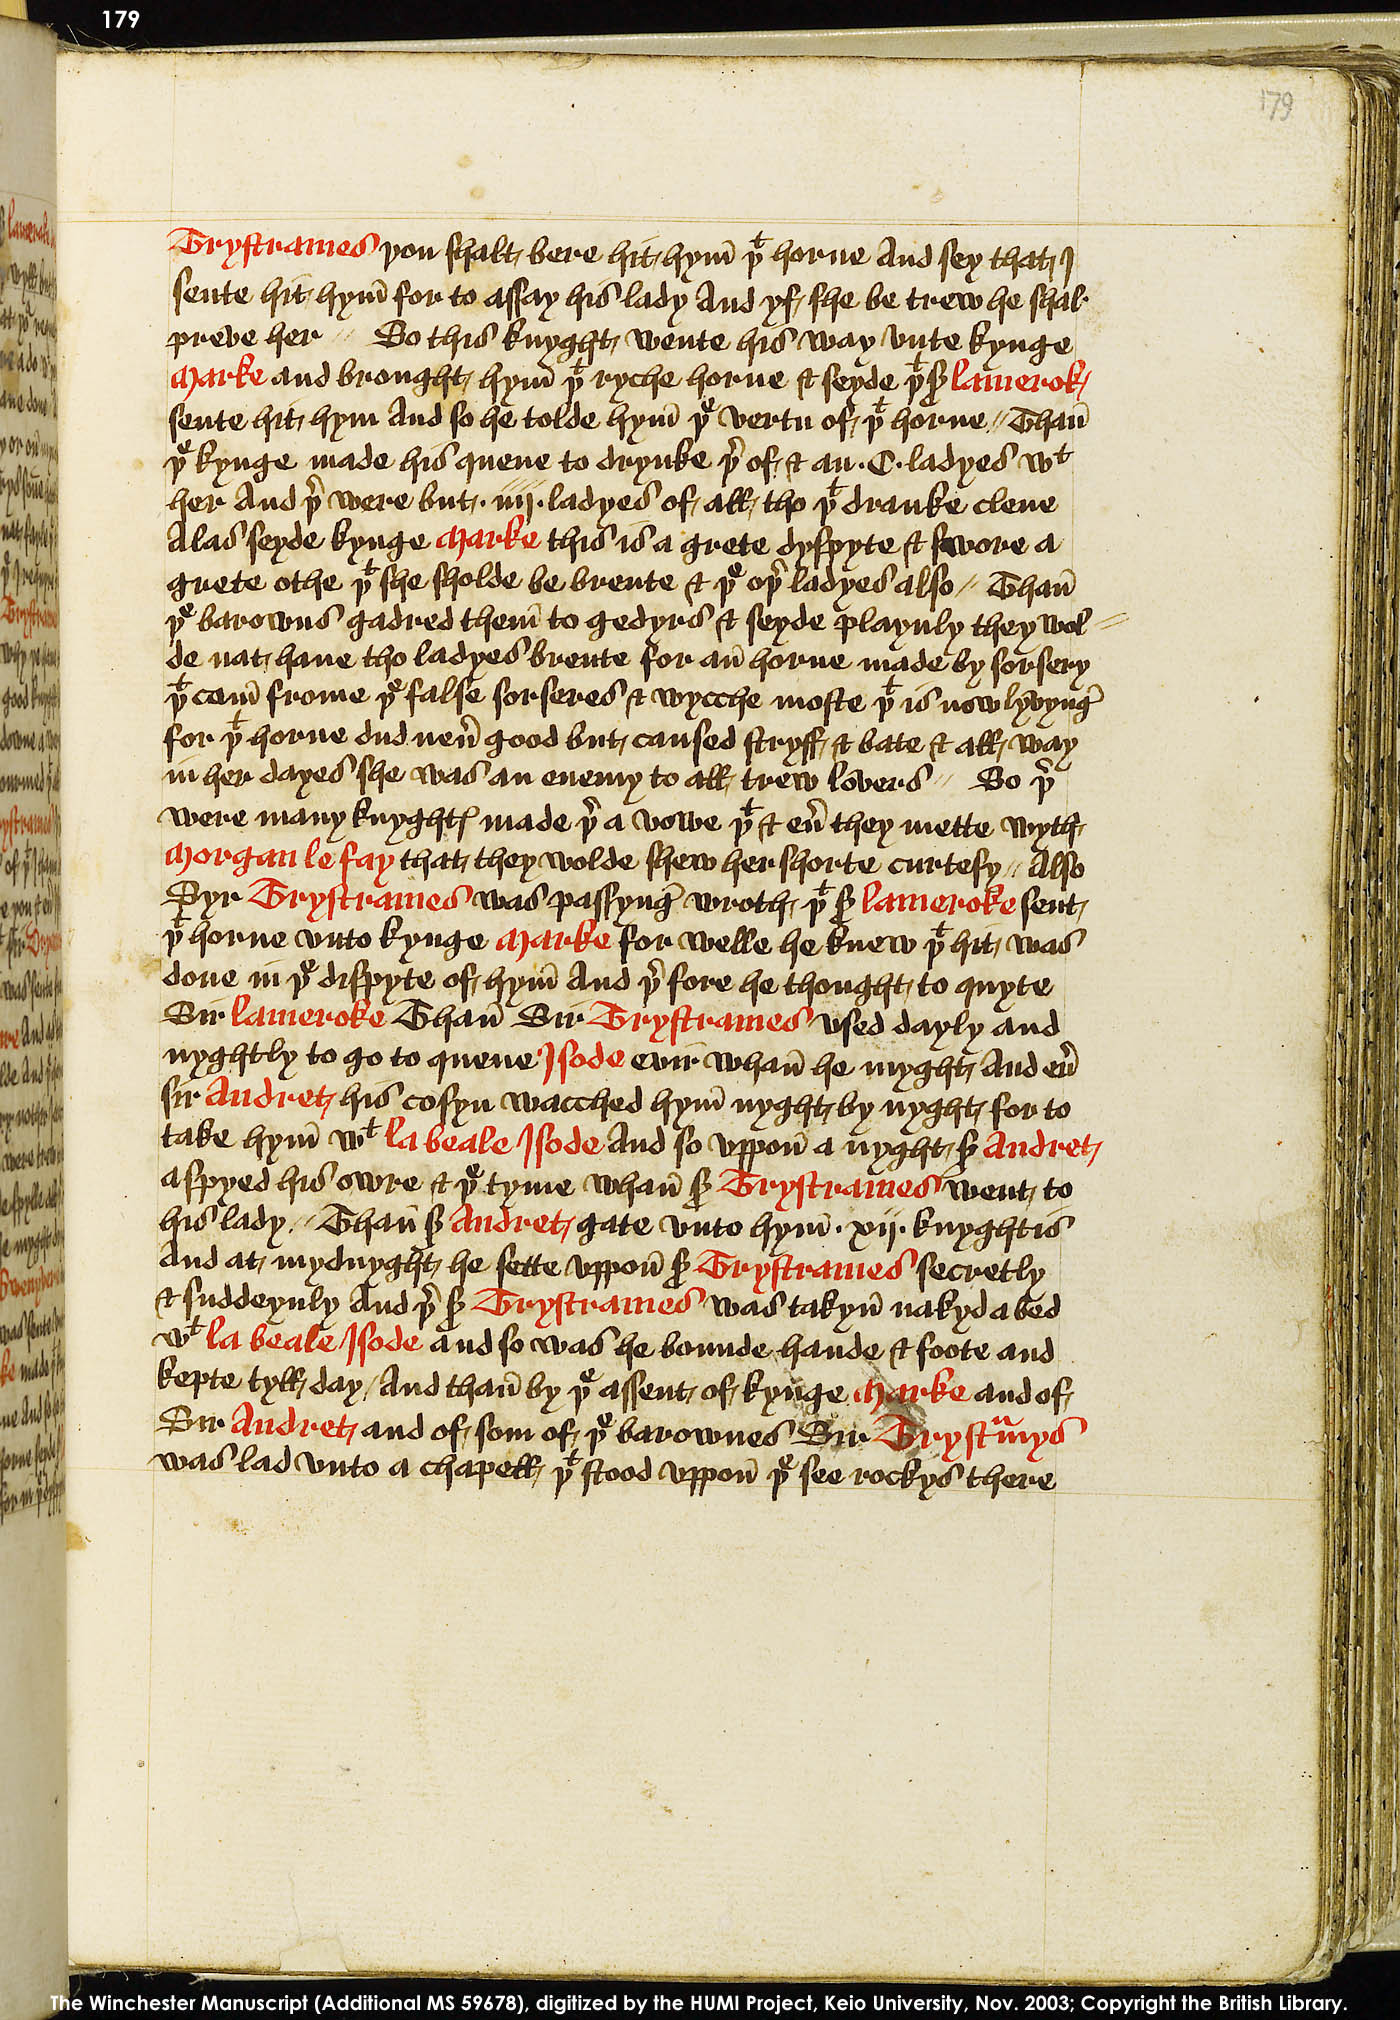 Folio 179r